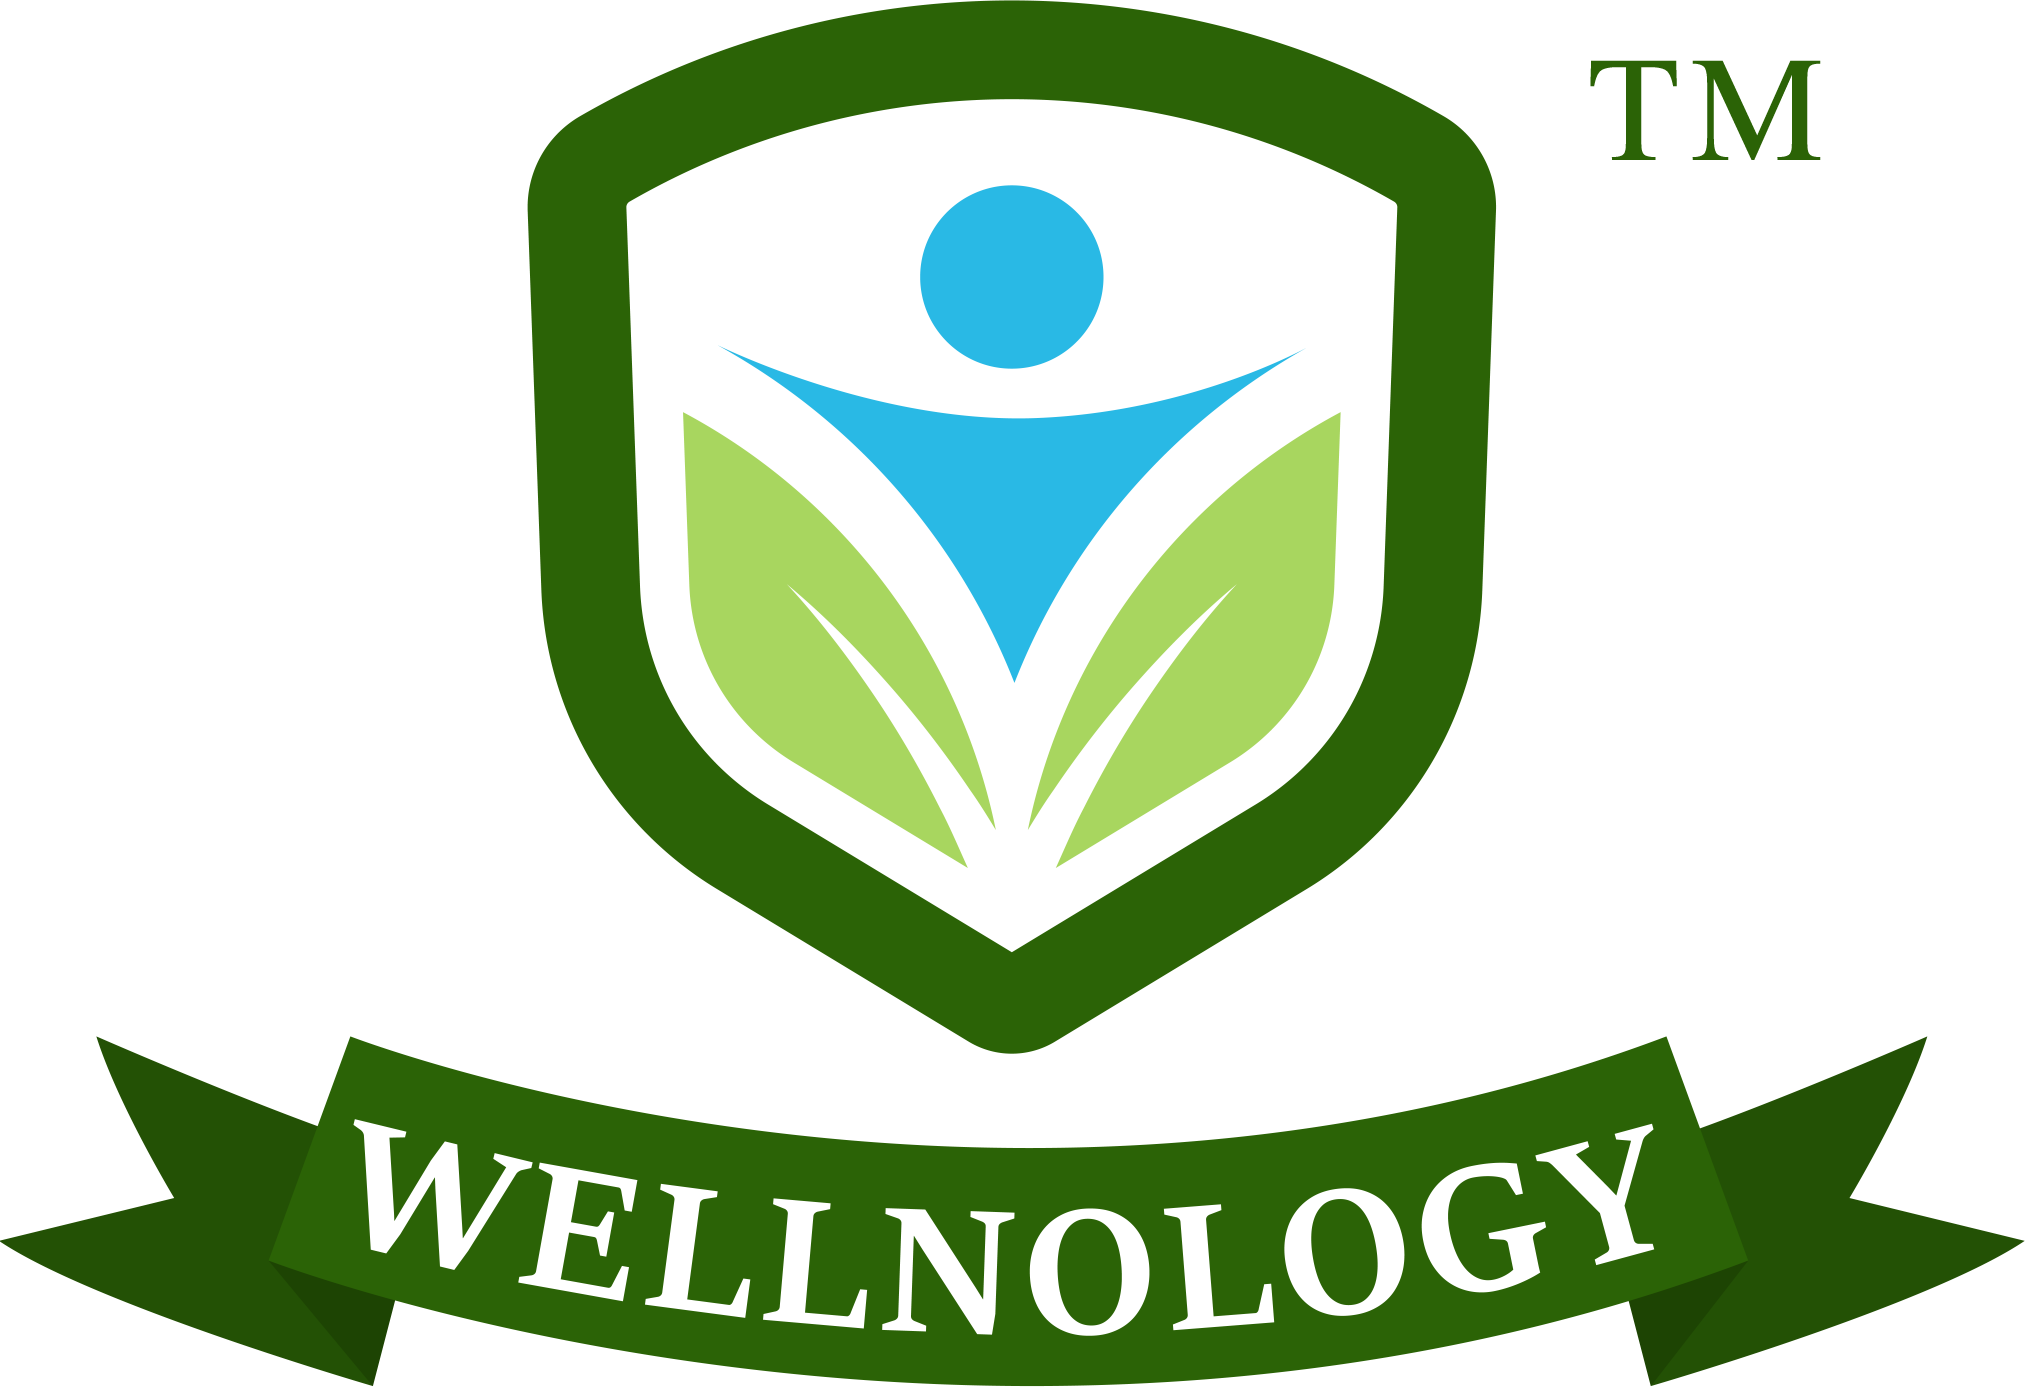 Wellnology